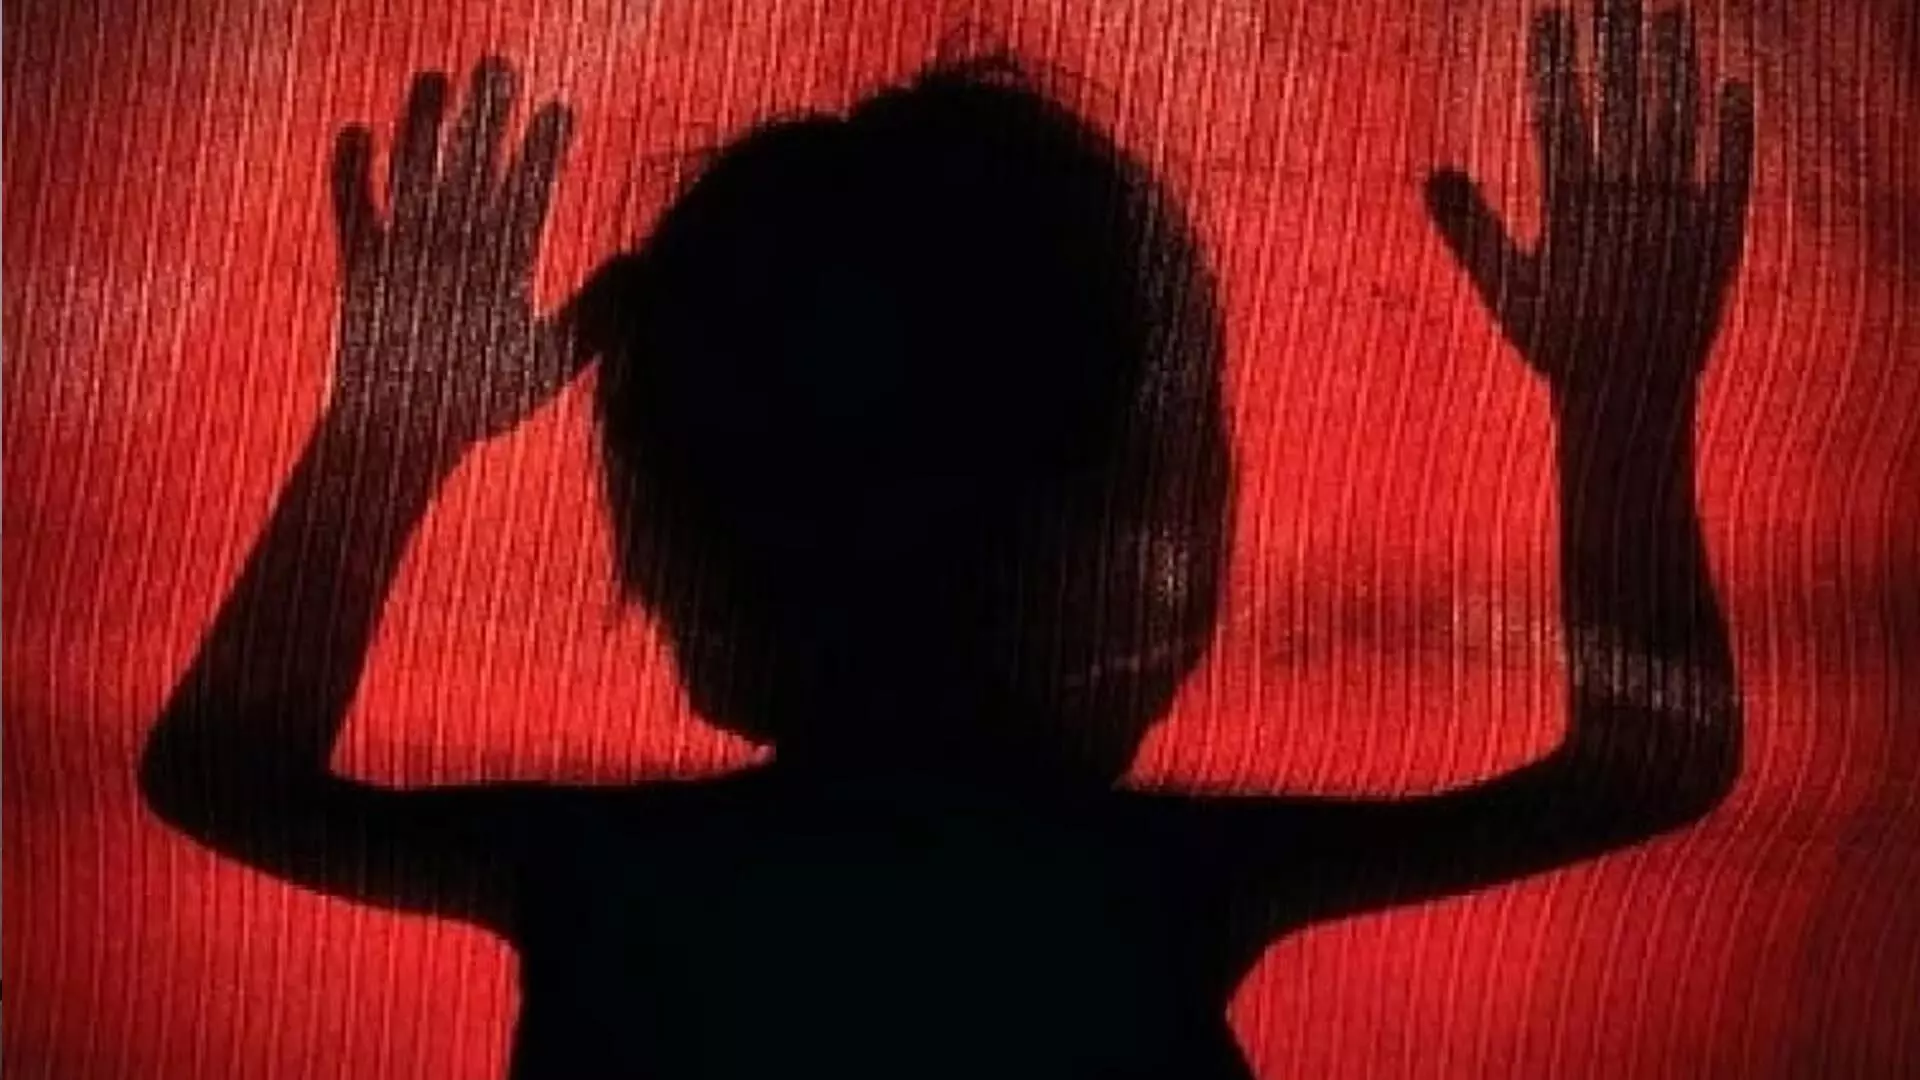 5 बच्चों का यौन उत्पीड़न करने के आरोप में सुरक्षा गार्ड को 10 साल जेल